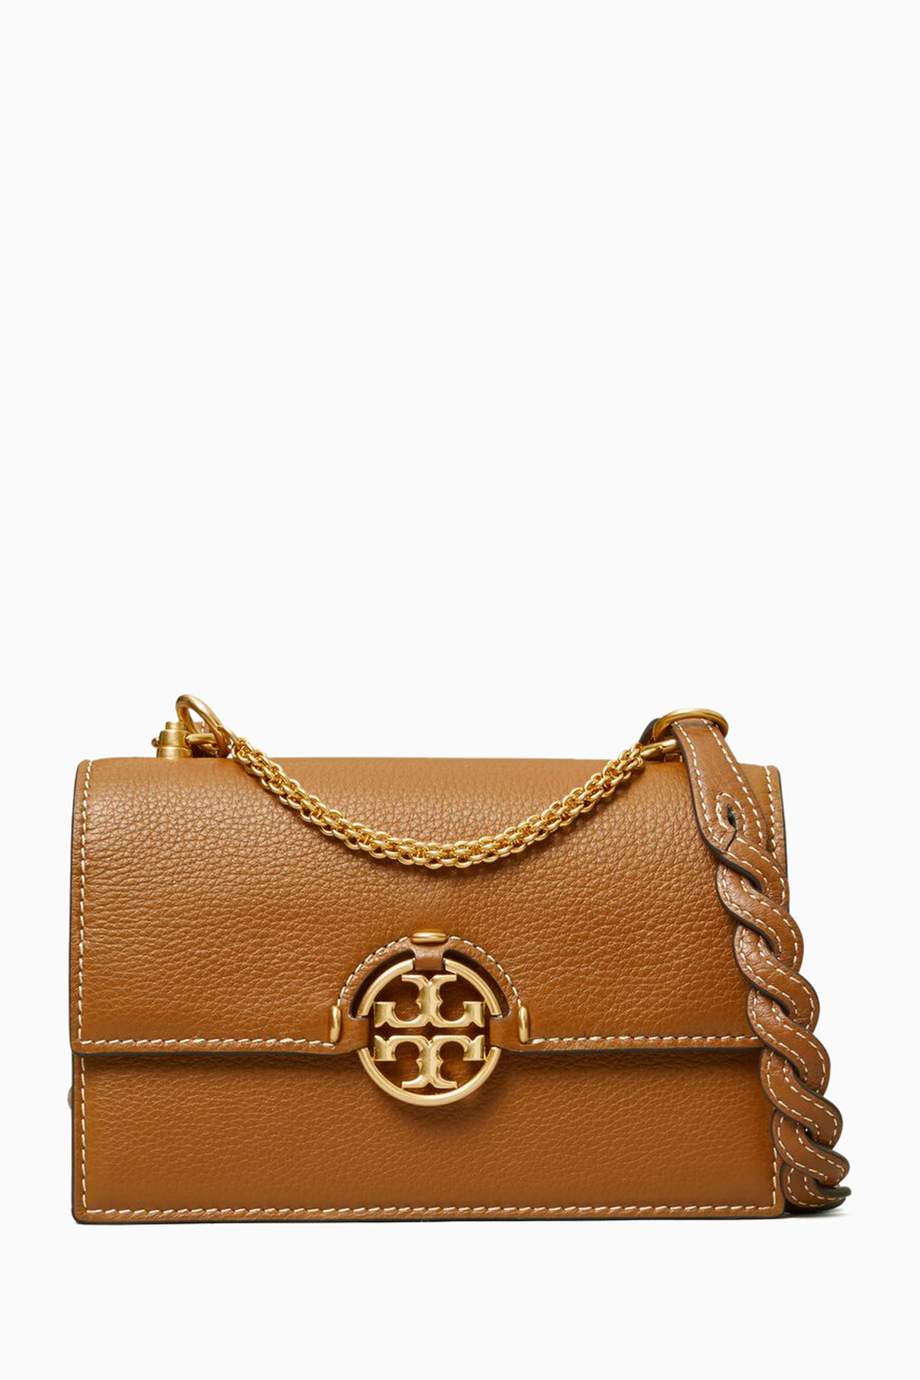 Tory Burch NEW SEASON Miller Mini Bag in Leather price in Doha Qatar